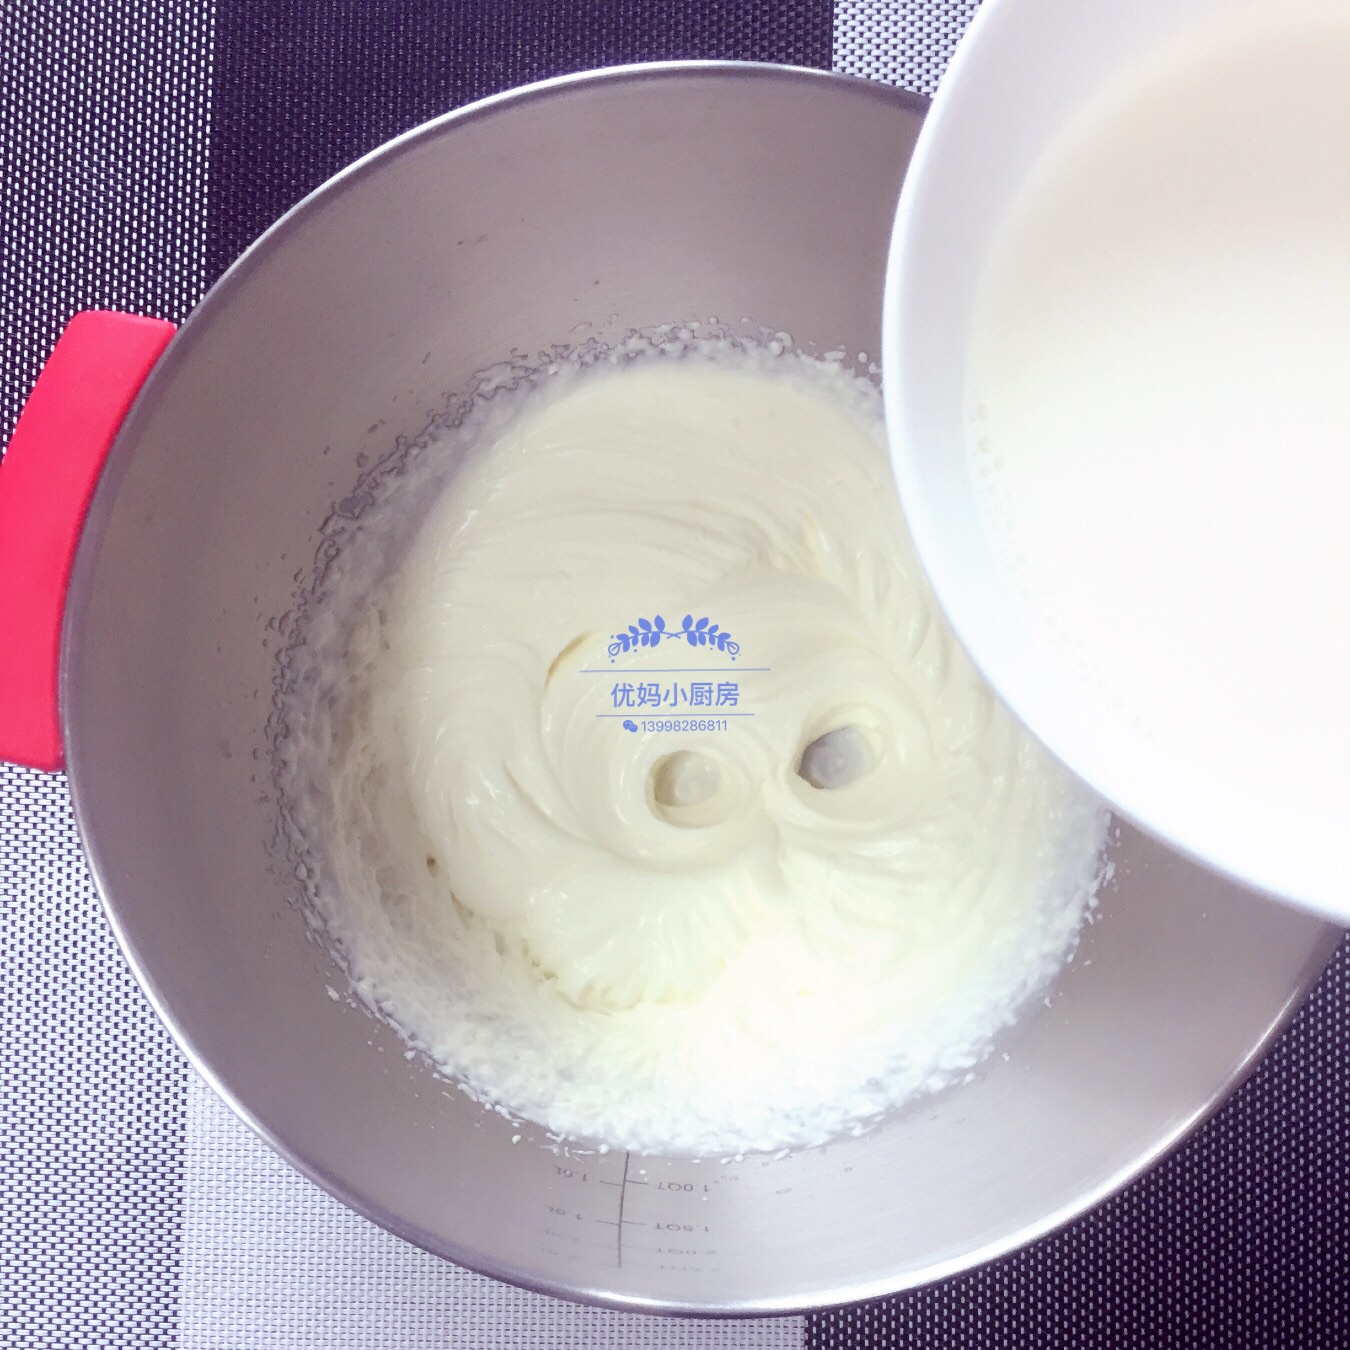 混合打发的淡奶油和加了吉利丁片的牛奶,拌匀.